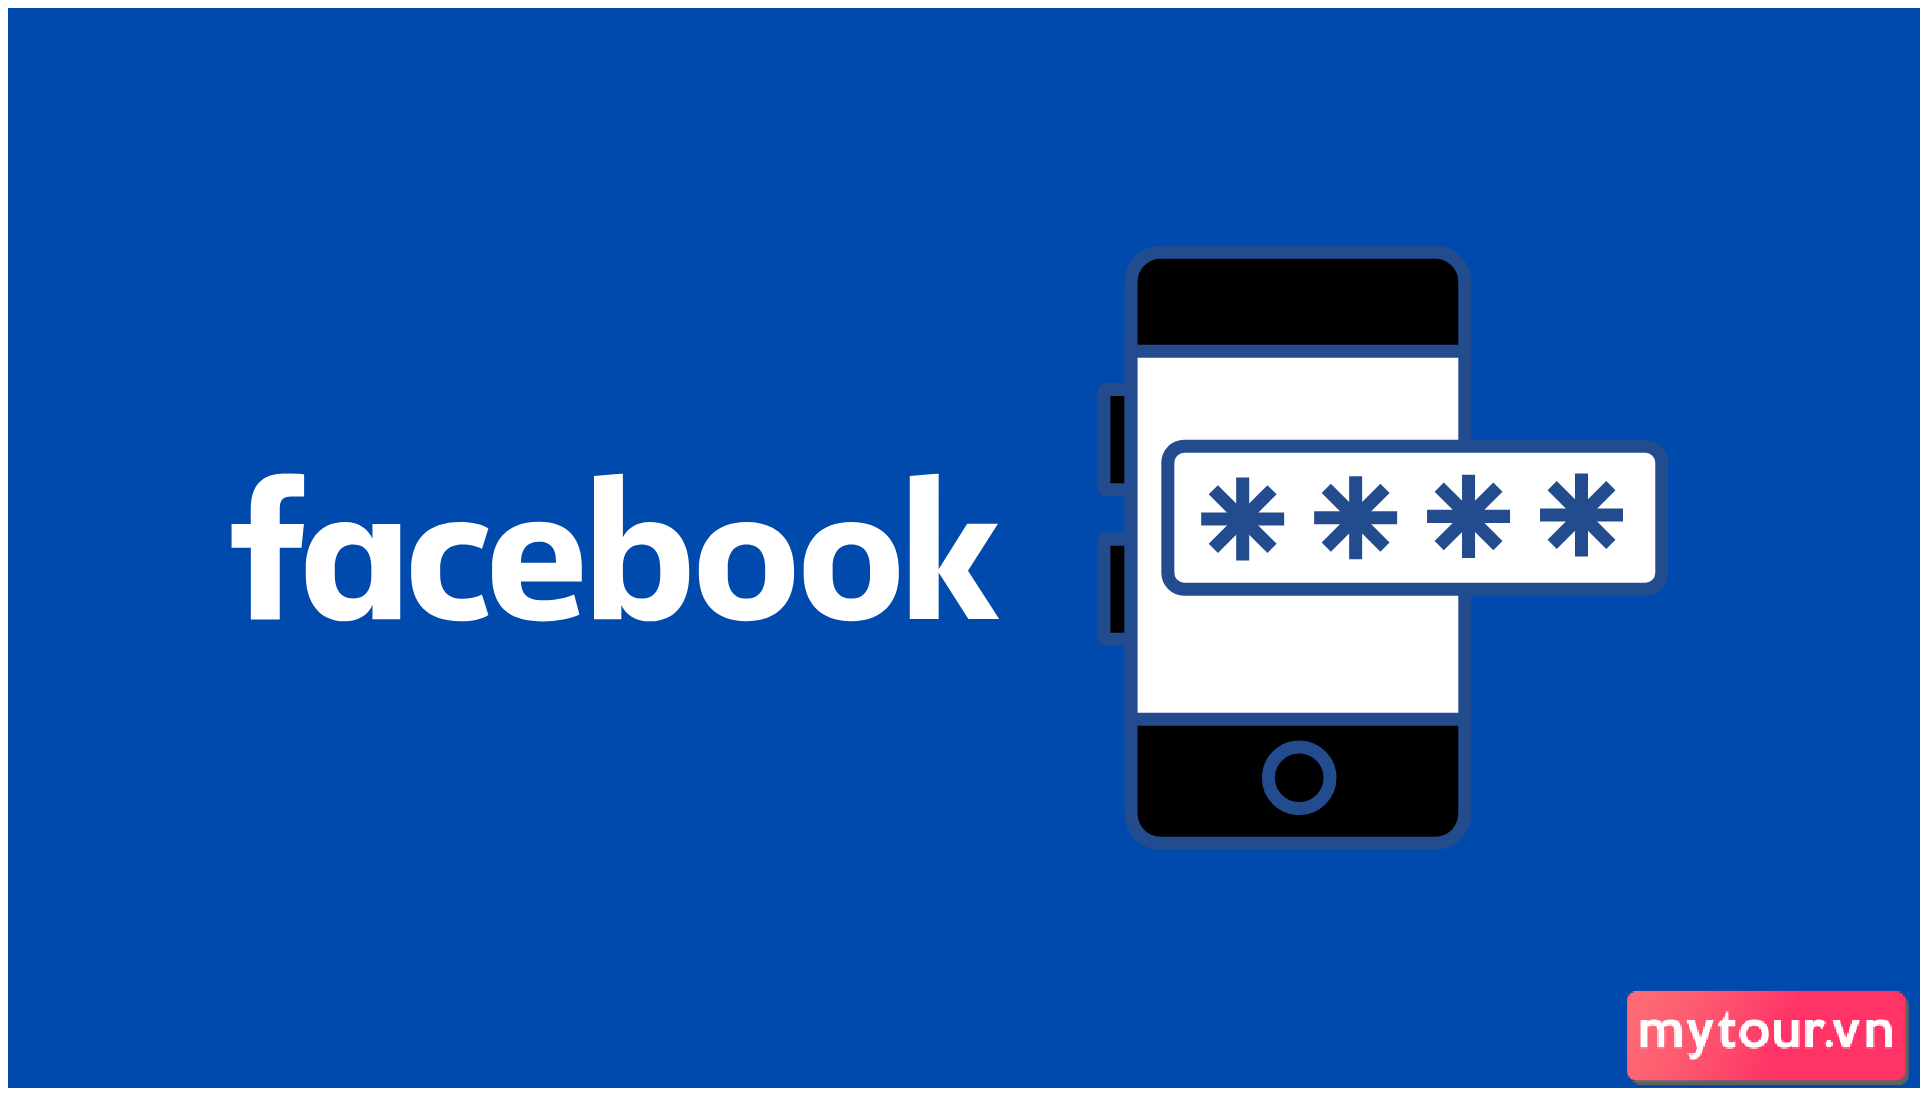 Làm thế nào để giải quyết vấn đề khi Facebook từ chối gửi mã xác nhận điện thoại của bạn?